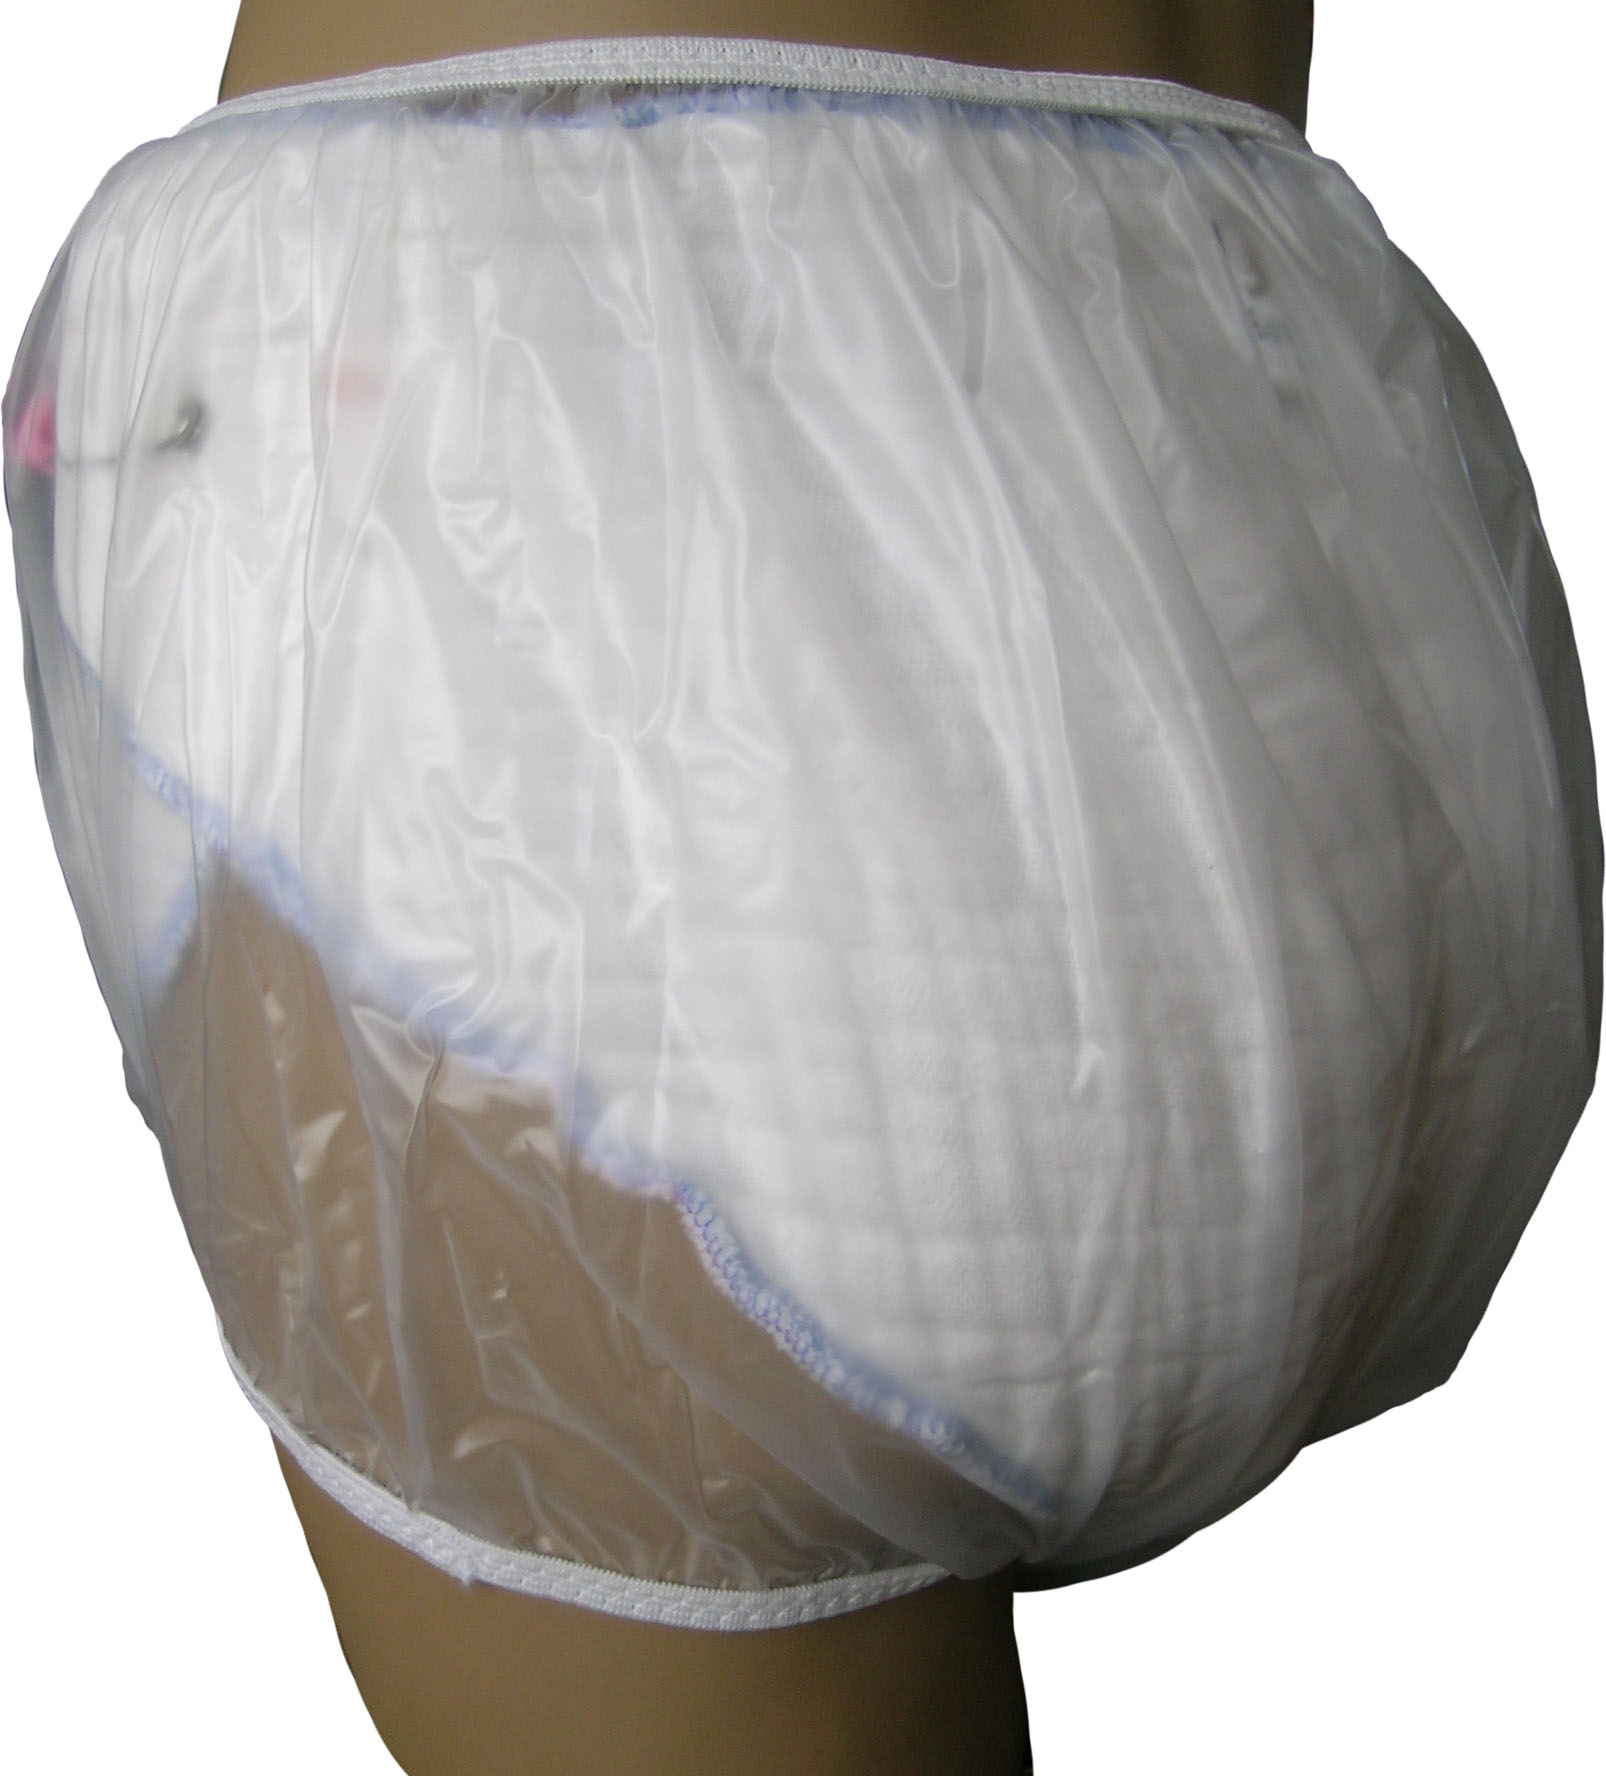 Rubber PVC Adult Baby Euroflex Incontinence Diaper Pants Rubber